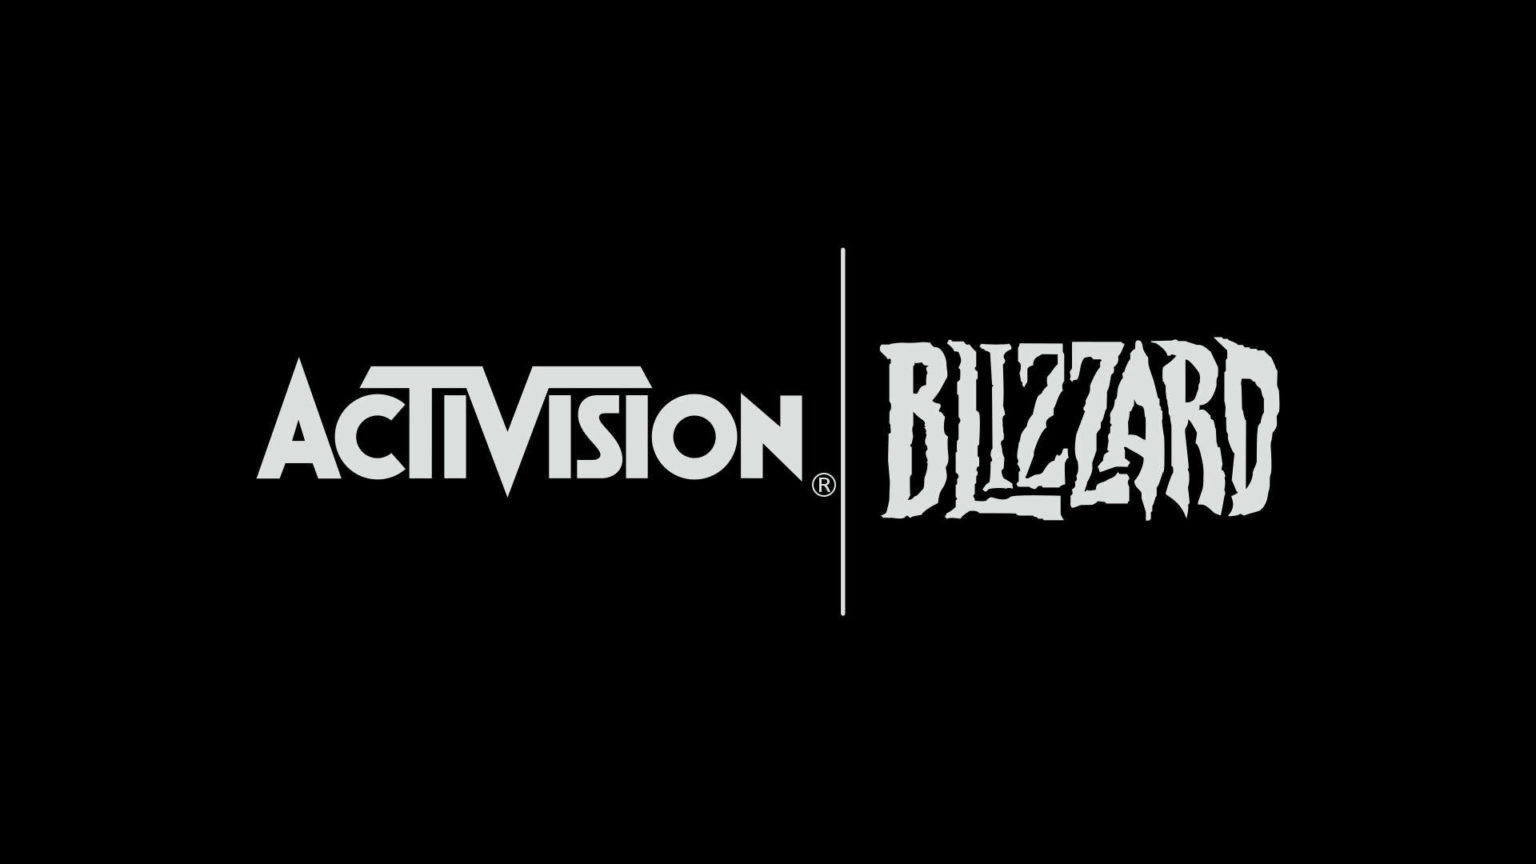 De CEO van Microsoft heeft er vertrouwen in dat de overname van Activision Blizzard niet zal worden geblokkeerd!